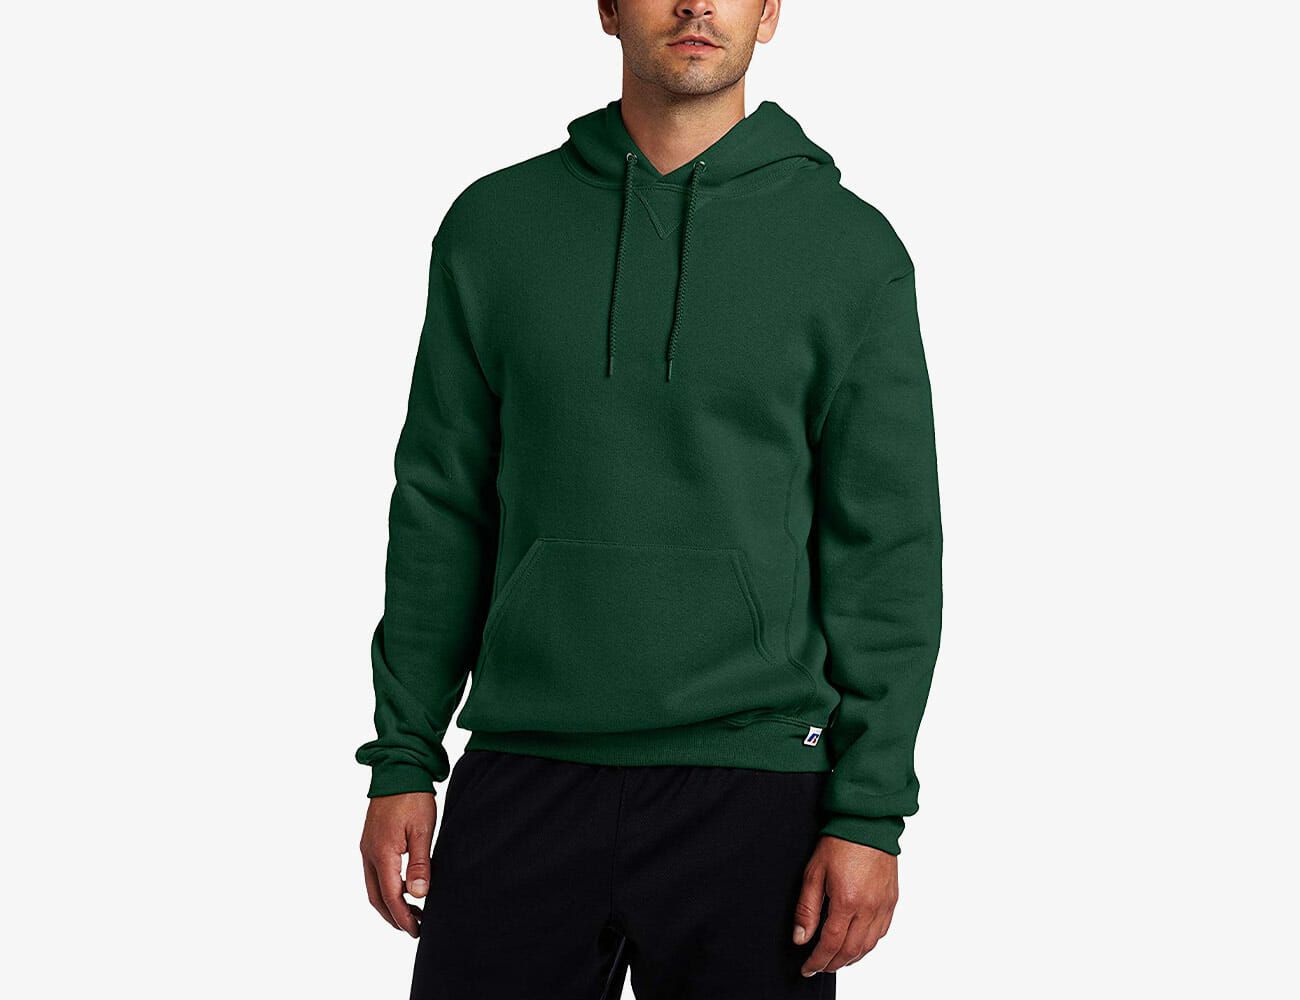 hoodies under 30 dollars